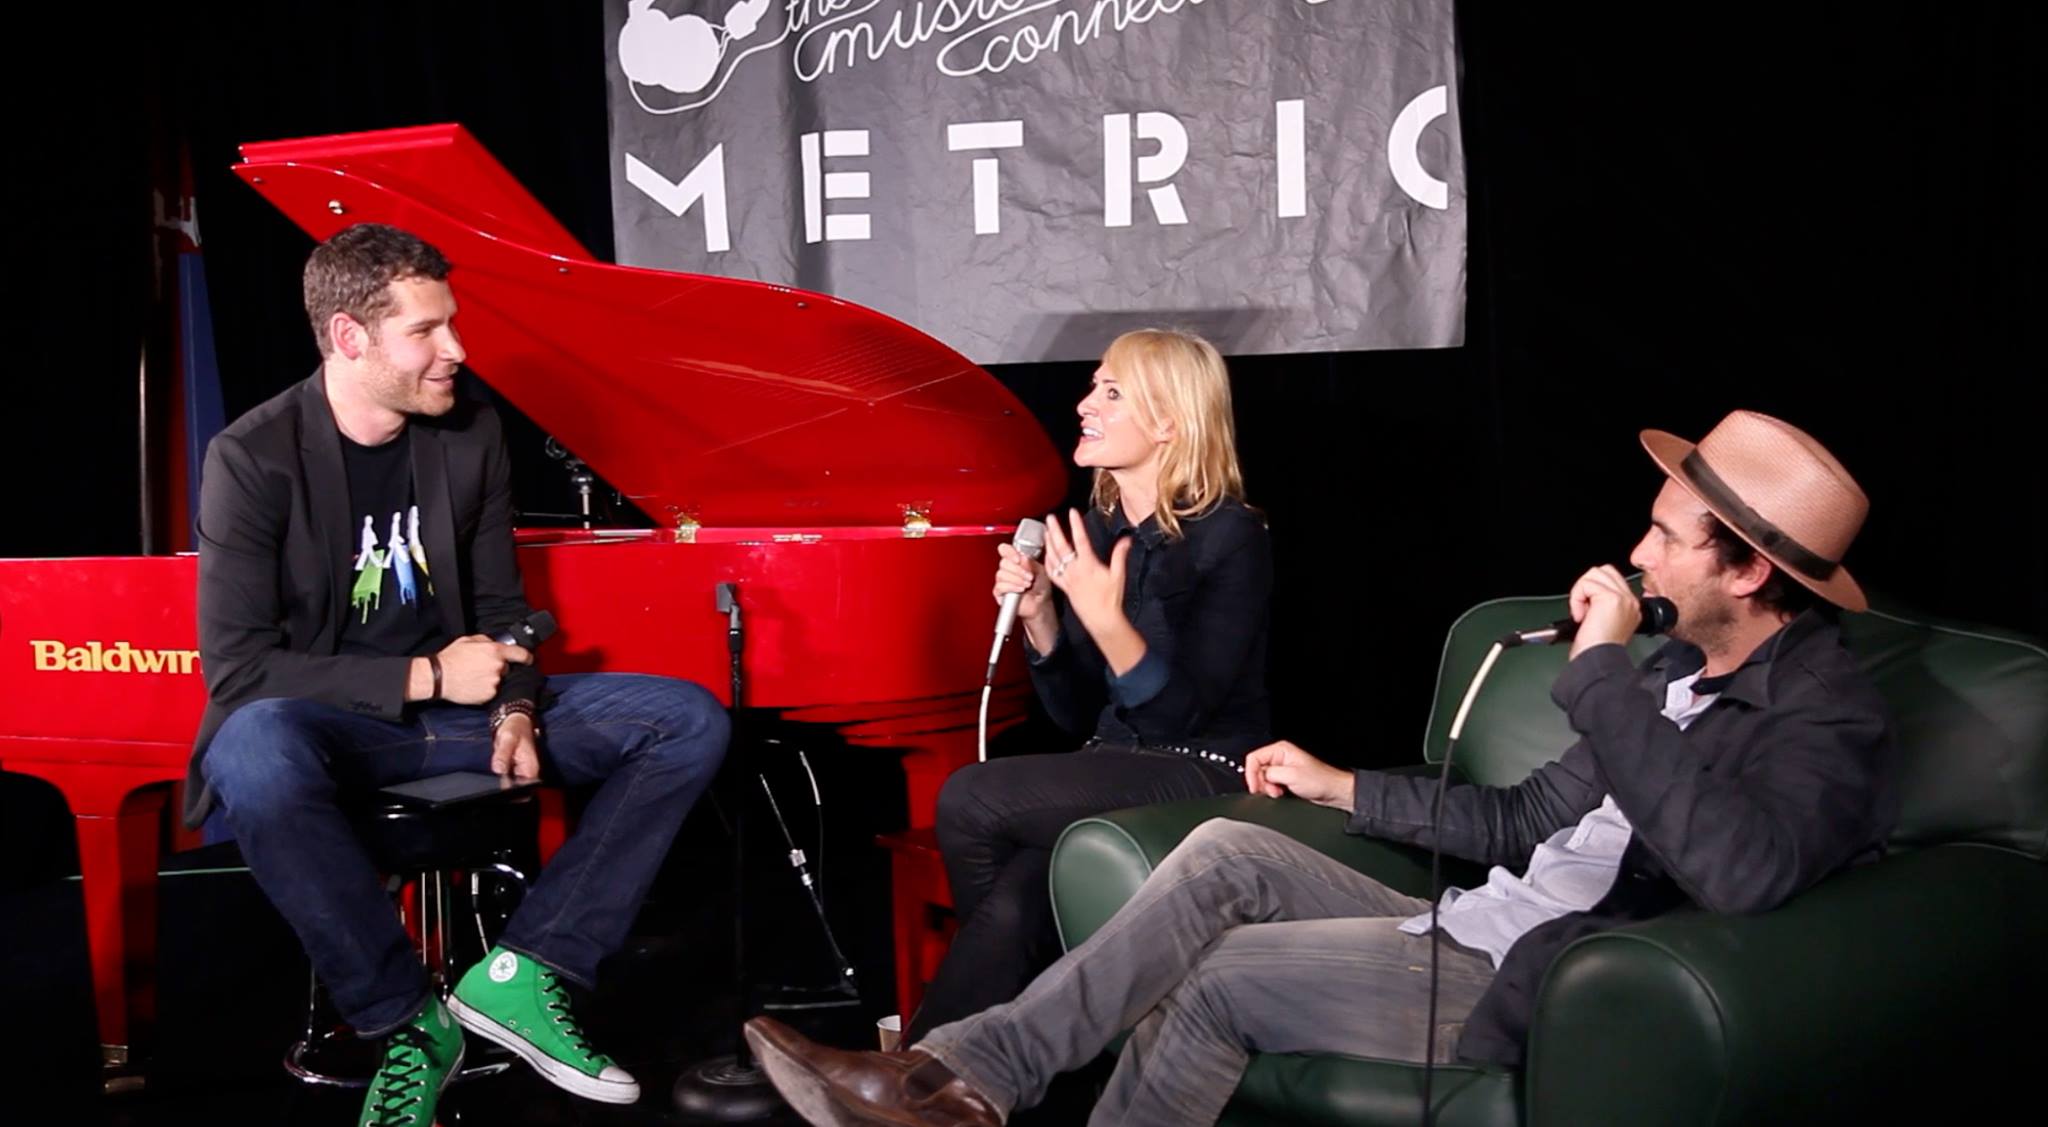 Metric Live Q&A on MSN Exclusives with Matt Schichter.